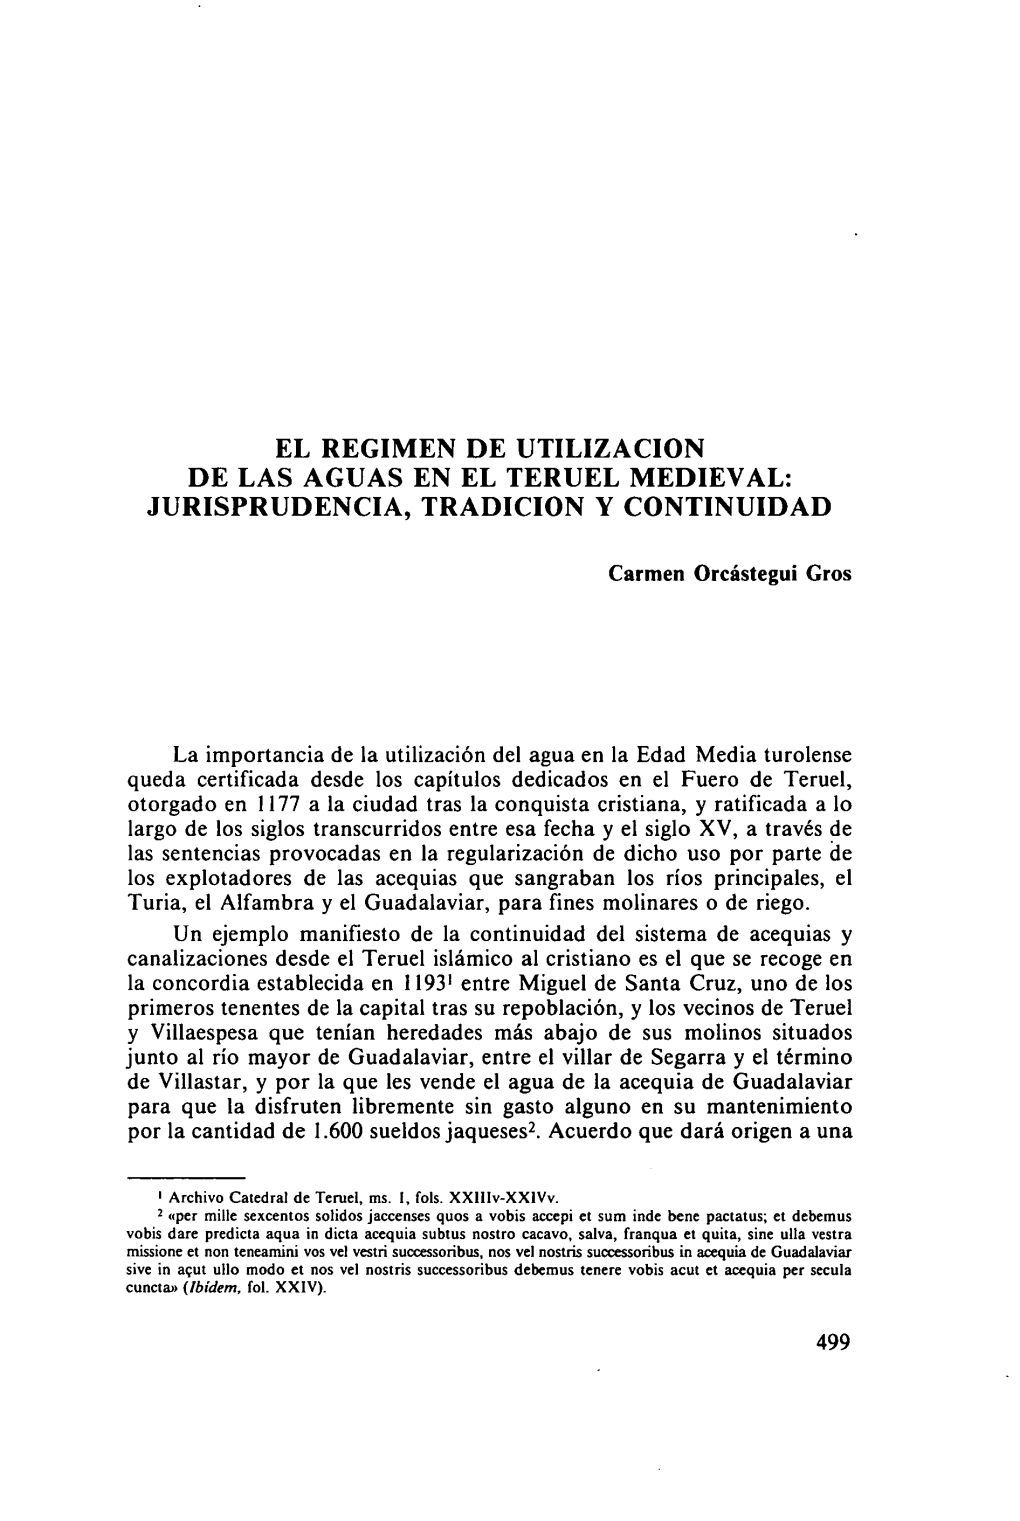 El Regimen De Utilizacion De Las Aguas En El Teruel Medieval: Jurisprudencia, Tradicion Y Continuidad